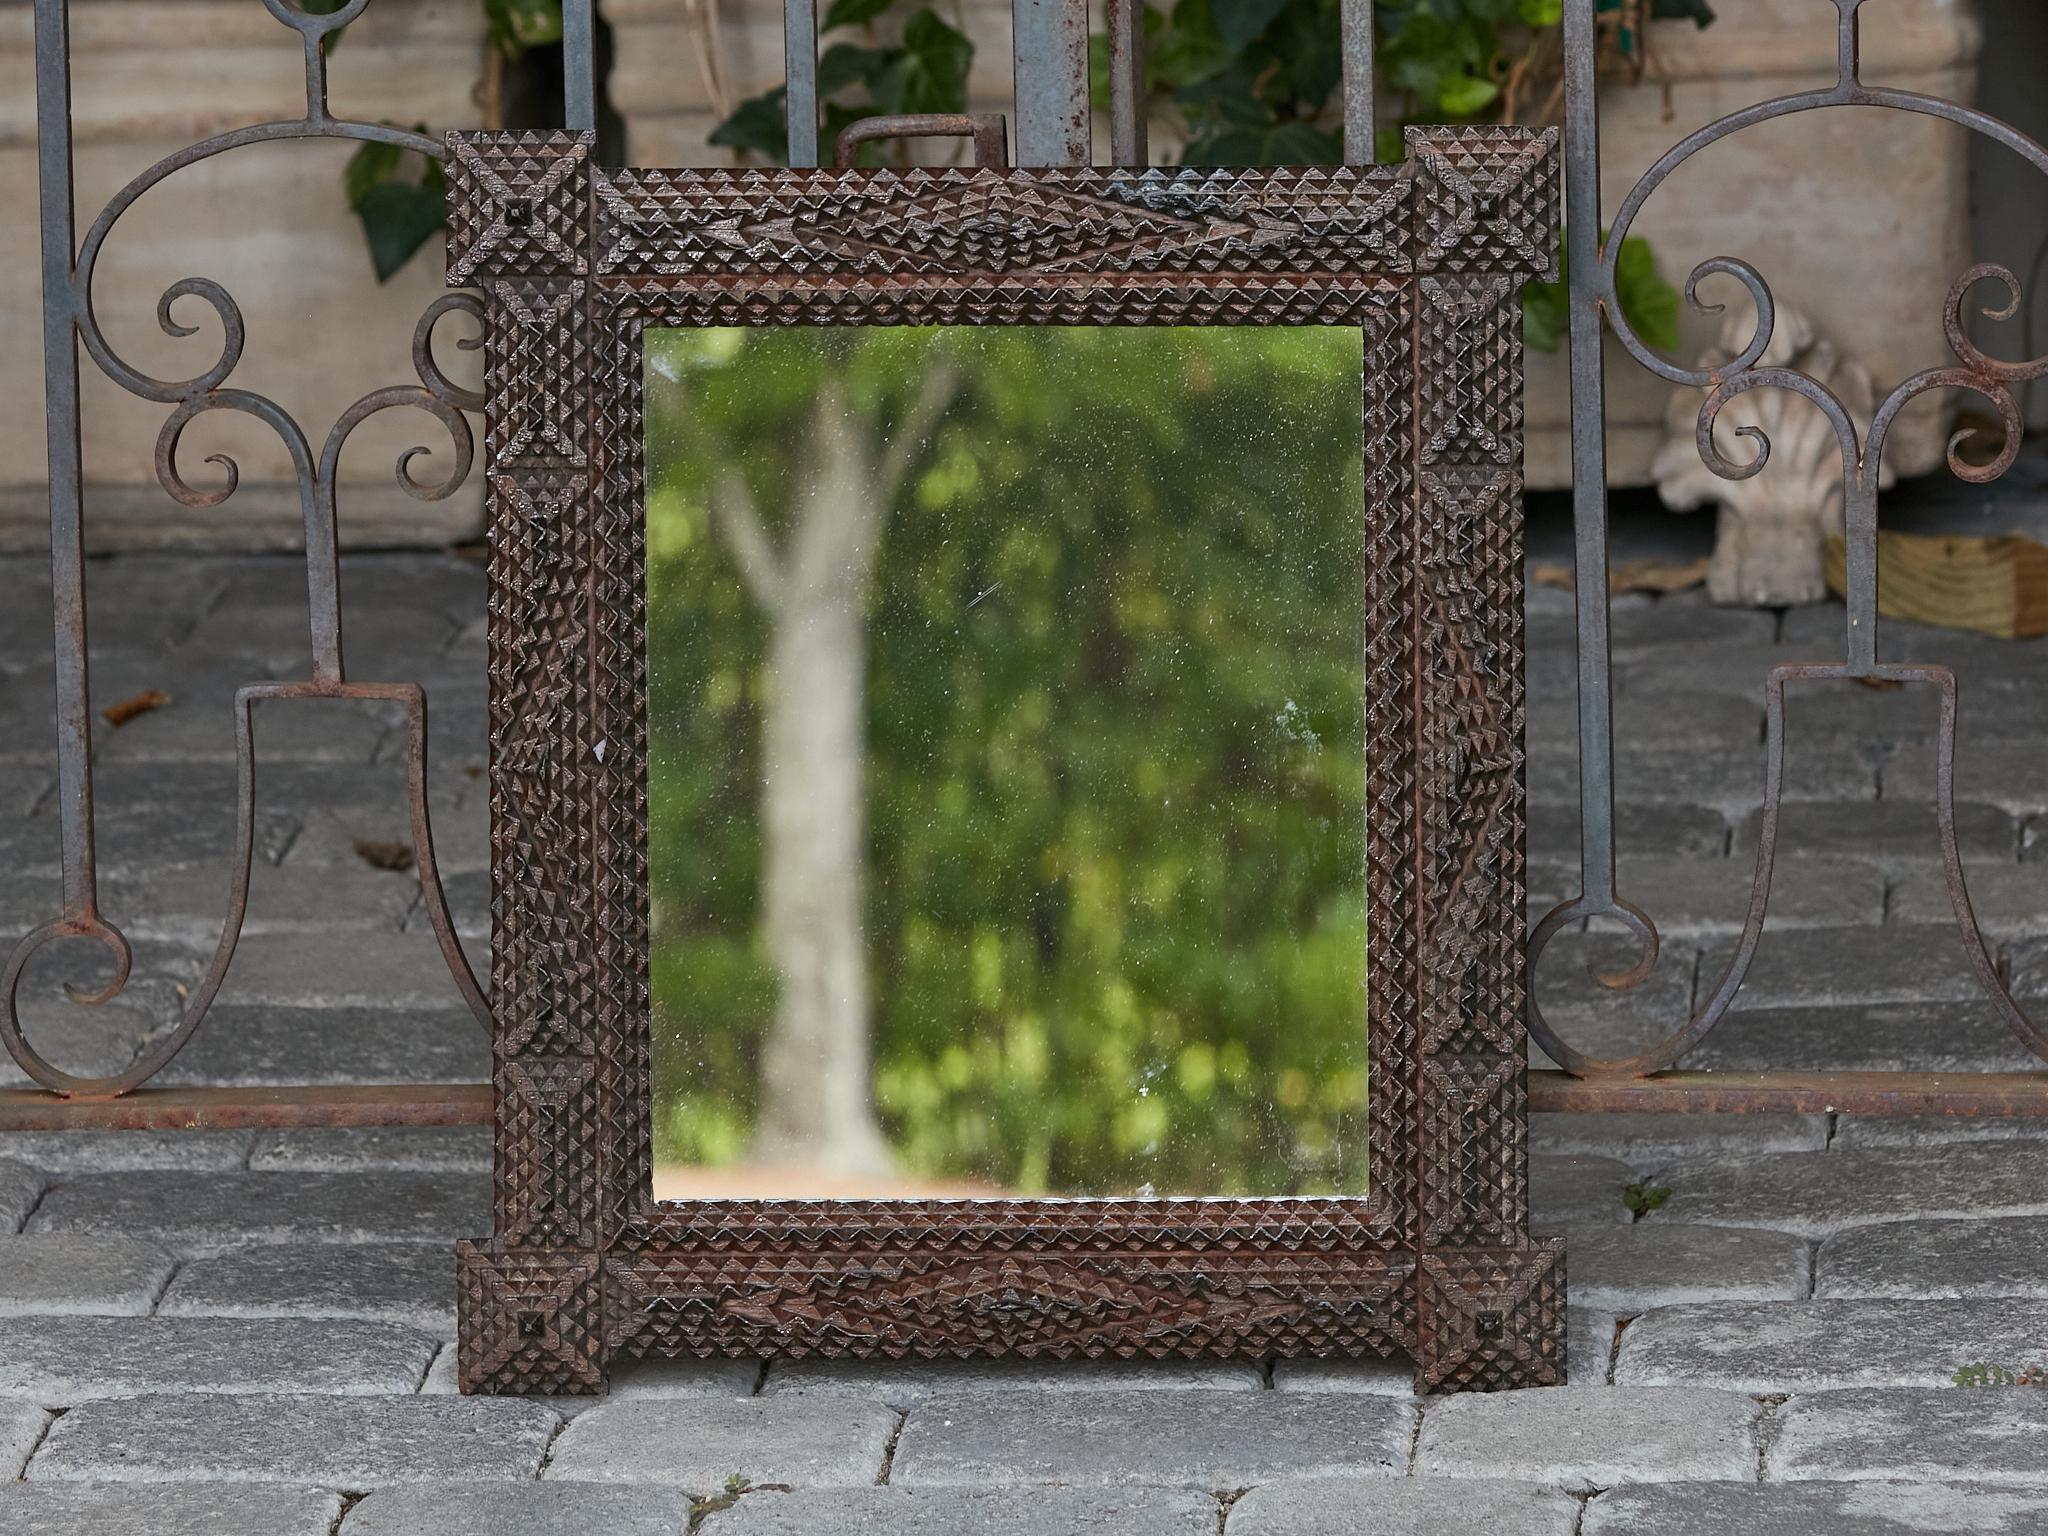 Ein französischer Tramp-Art-Spiegel aus der Jahrhundertwende mit vorspringenden Ecken, erhabenen geometrischen Motiven und dunkelbrauner Farbe. Dieser exquisite französische Tramp-Art-Spiegel aus der Jahrhundertwende besticht durch eine gelungene